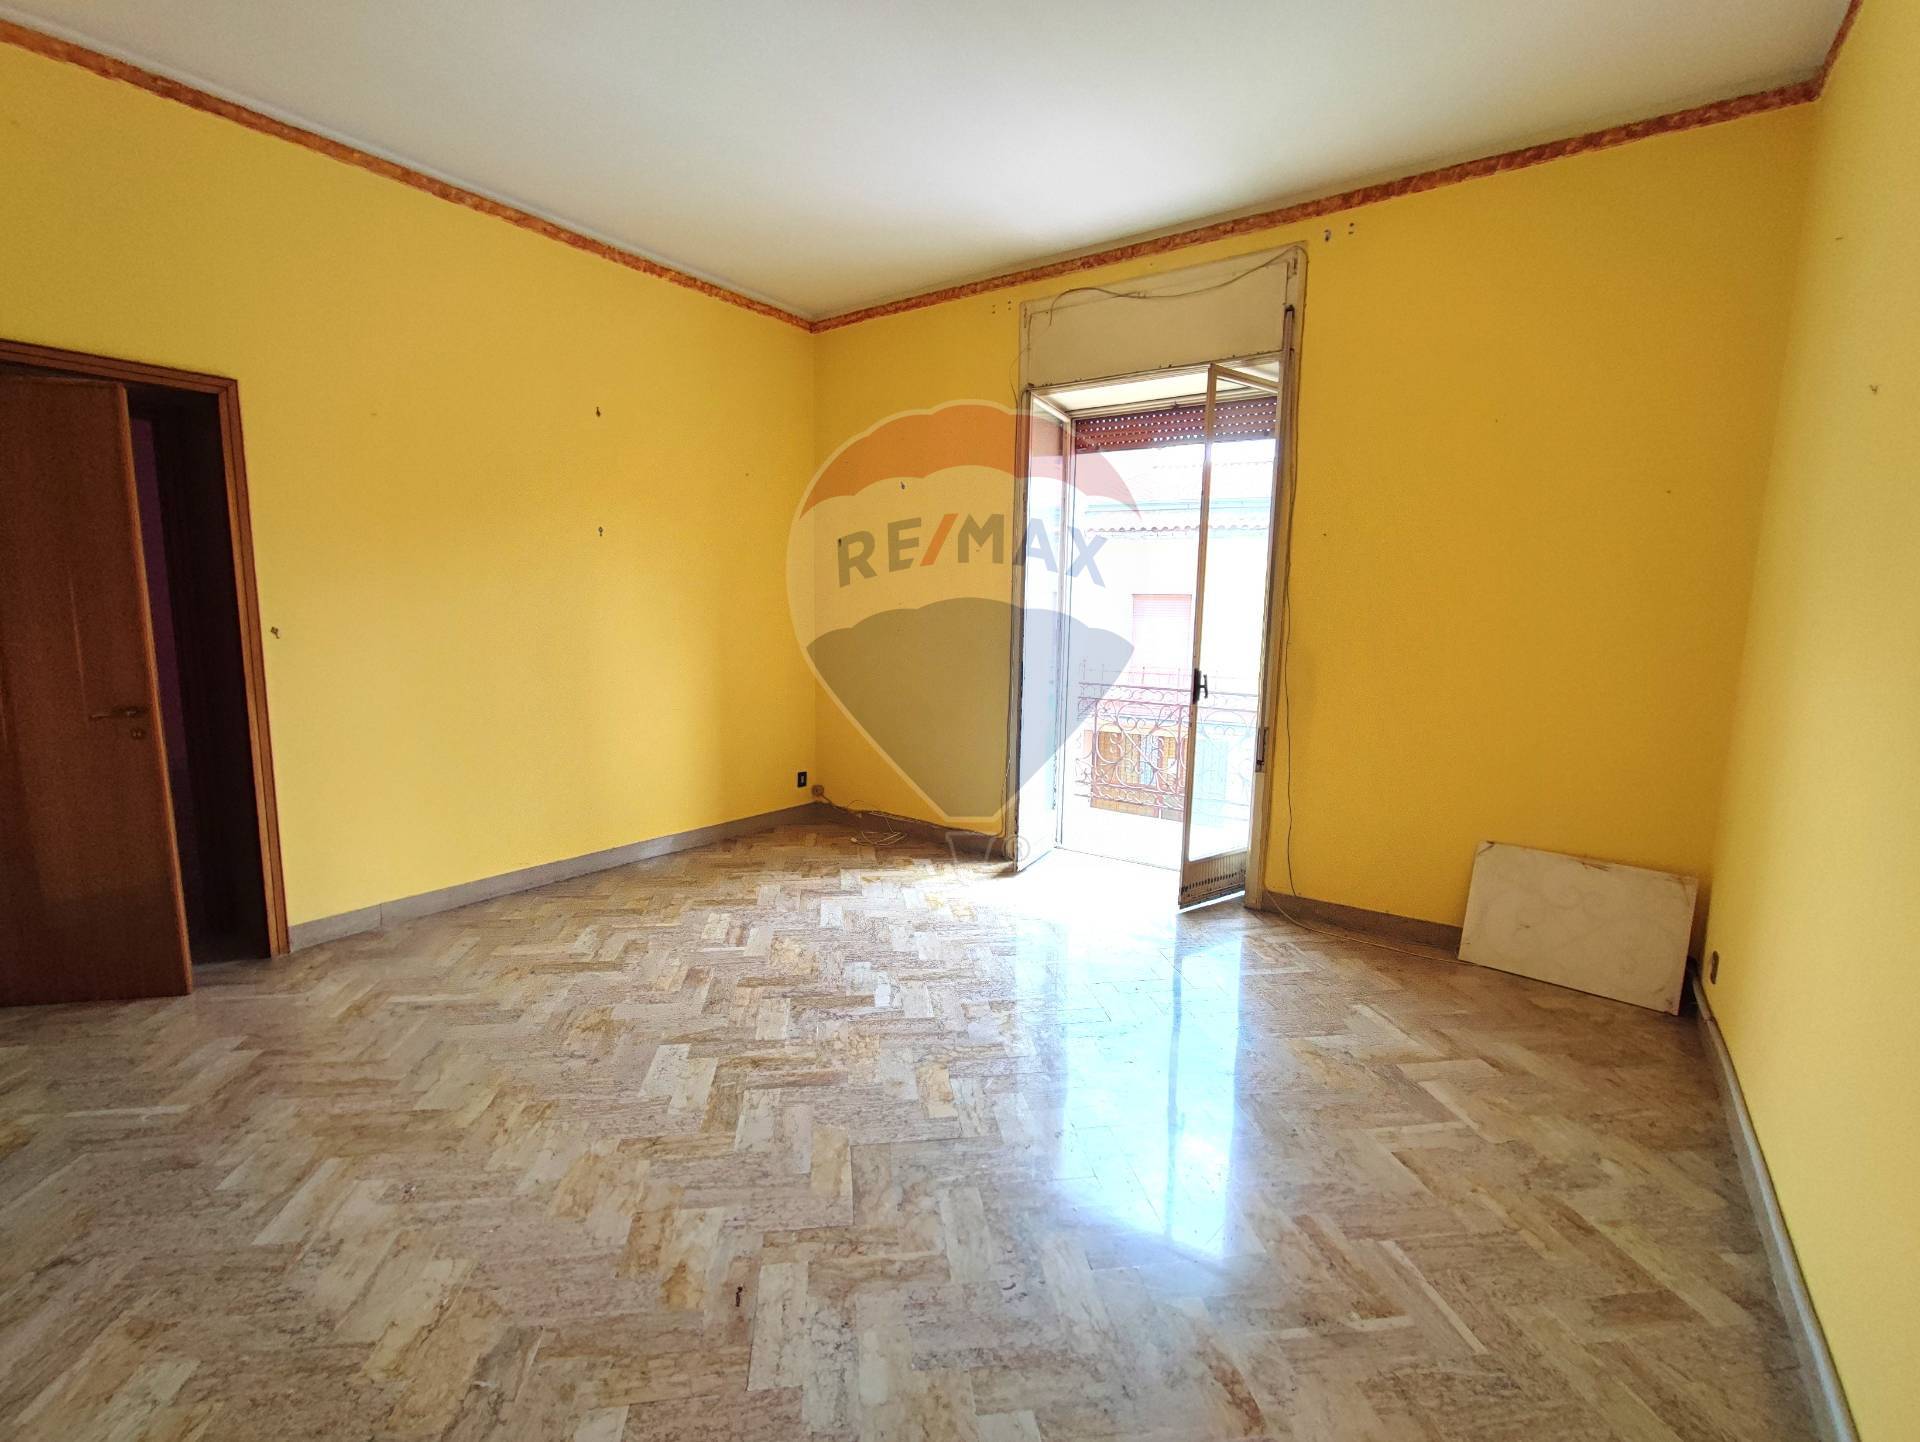 Appartamento in vendita a Sparanise, 3 locali, prezzo € 62.000 | PortaleAgenzieImmobiliari.it